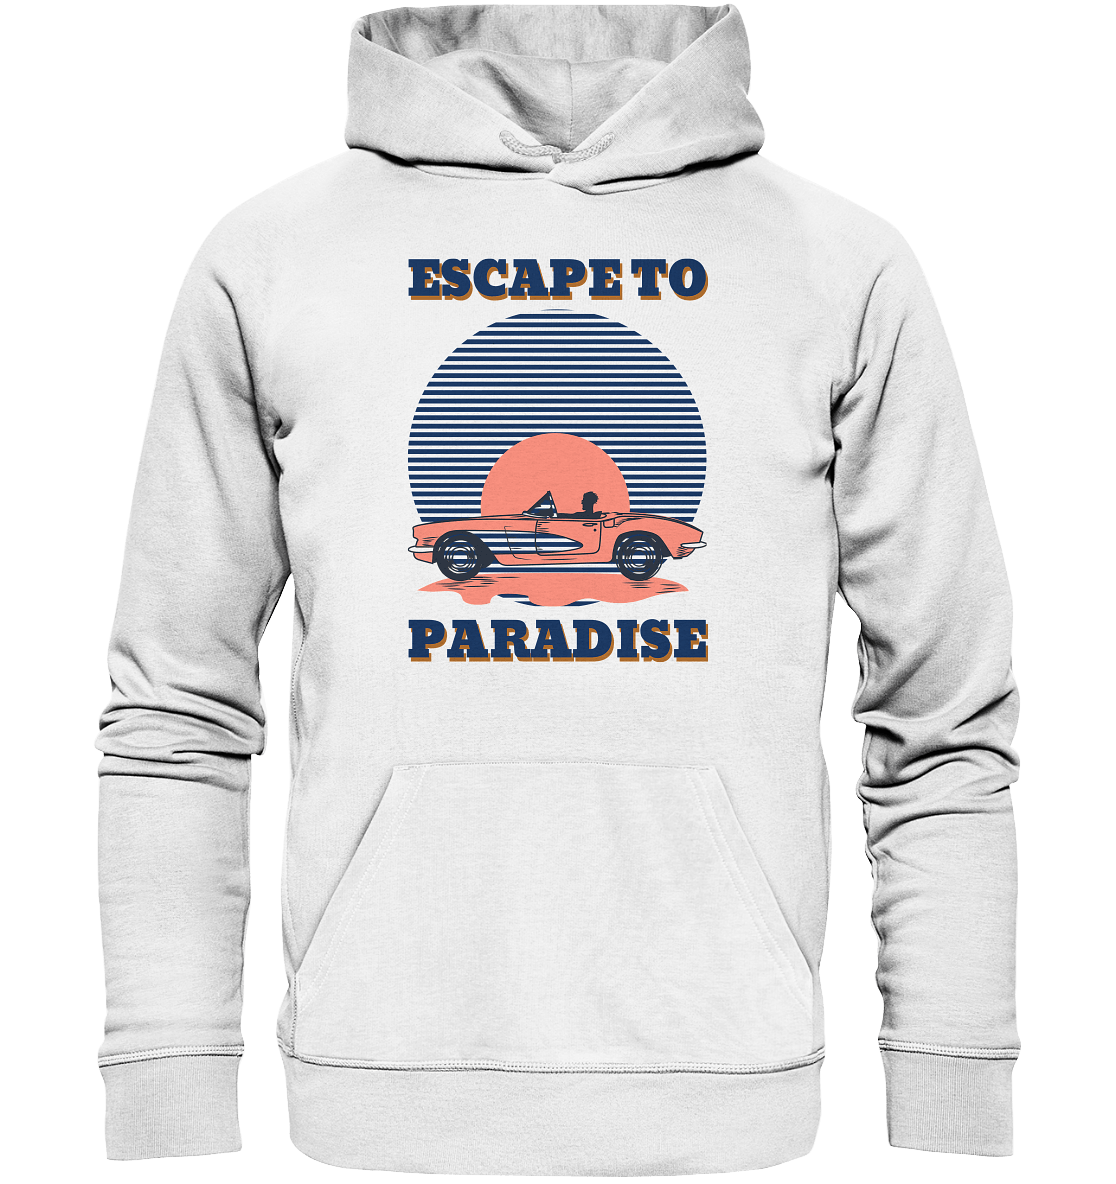 Stylisches und bequemes Herren Kapuzenpullover mit trendigem Retro Design und Beschriftung "Escape to Paradise". 